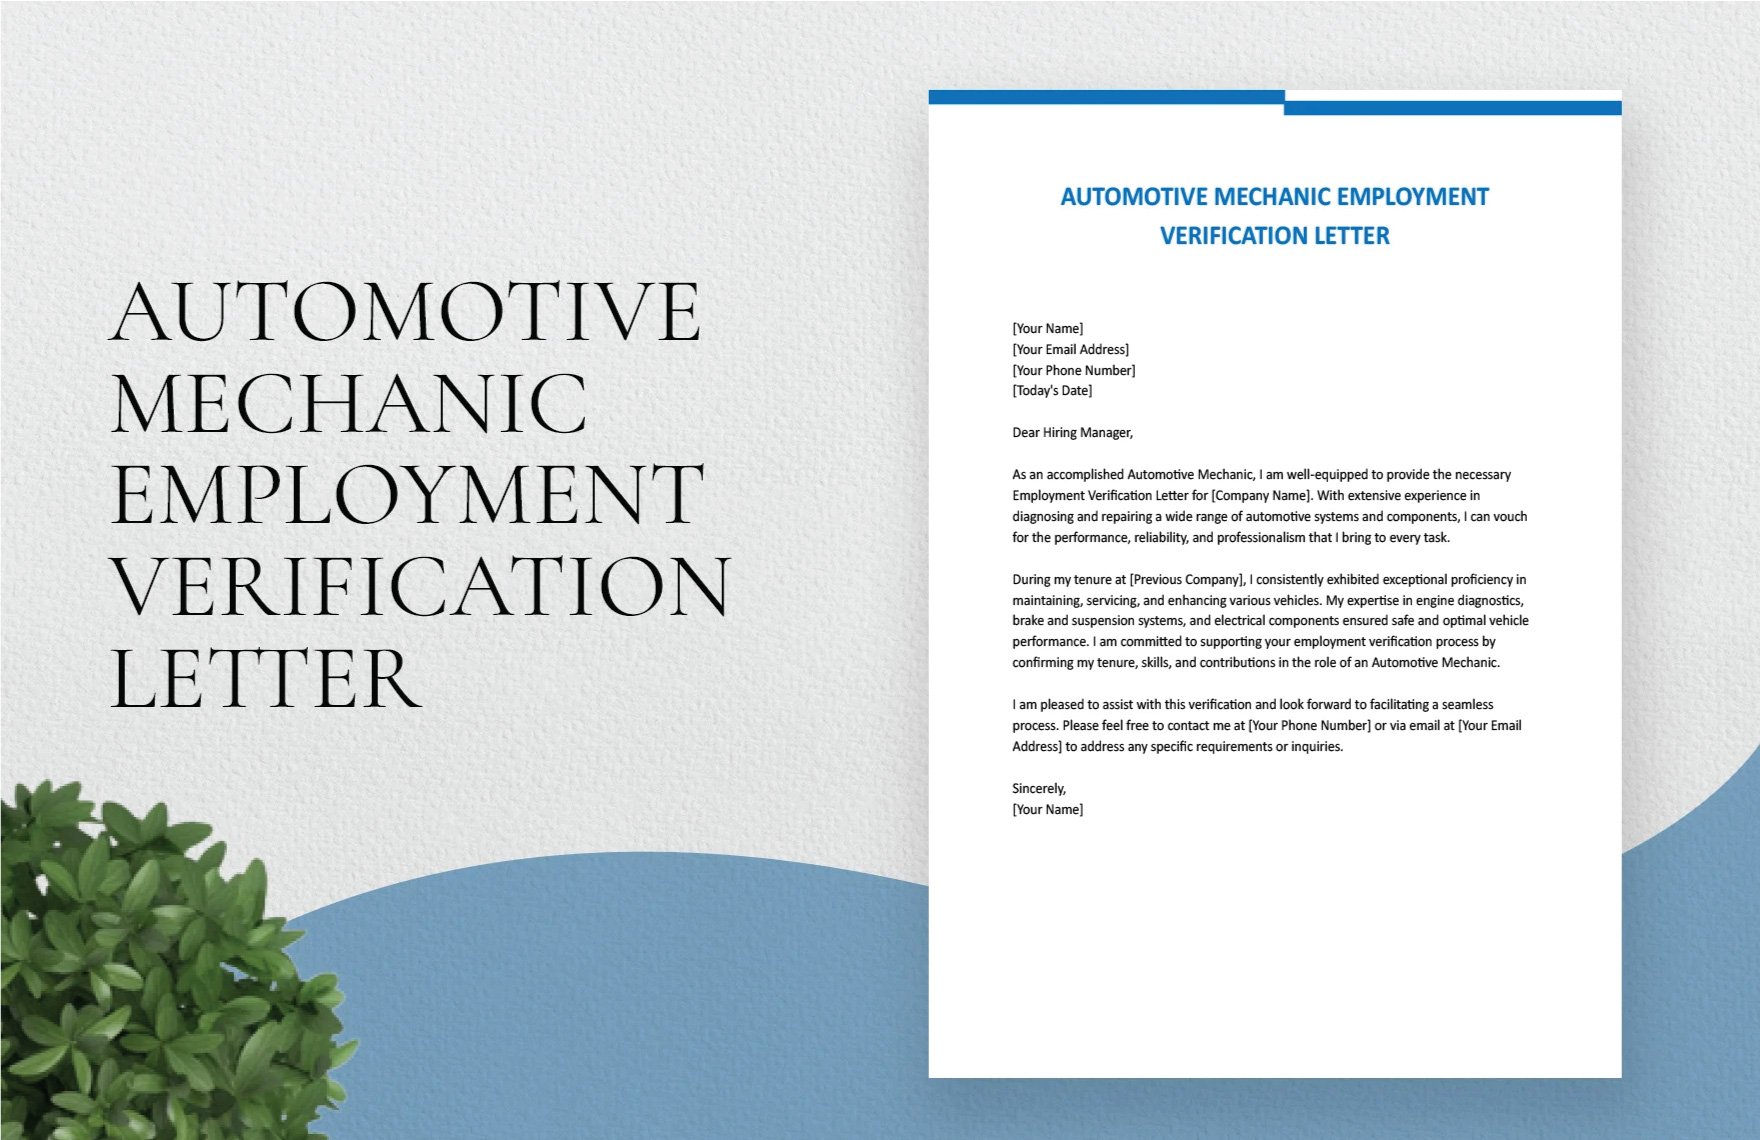 Free Automotive Mechanic Employment Verification Letter